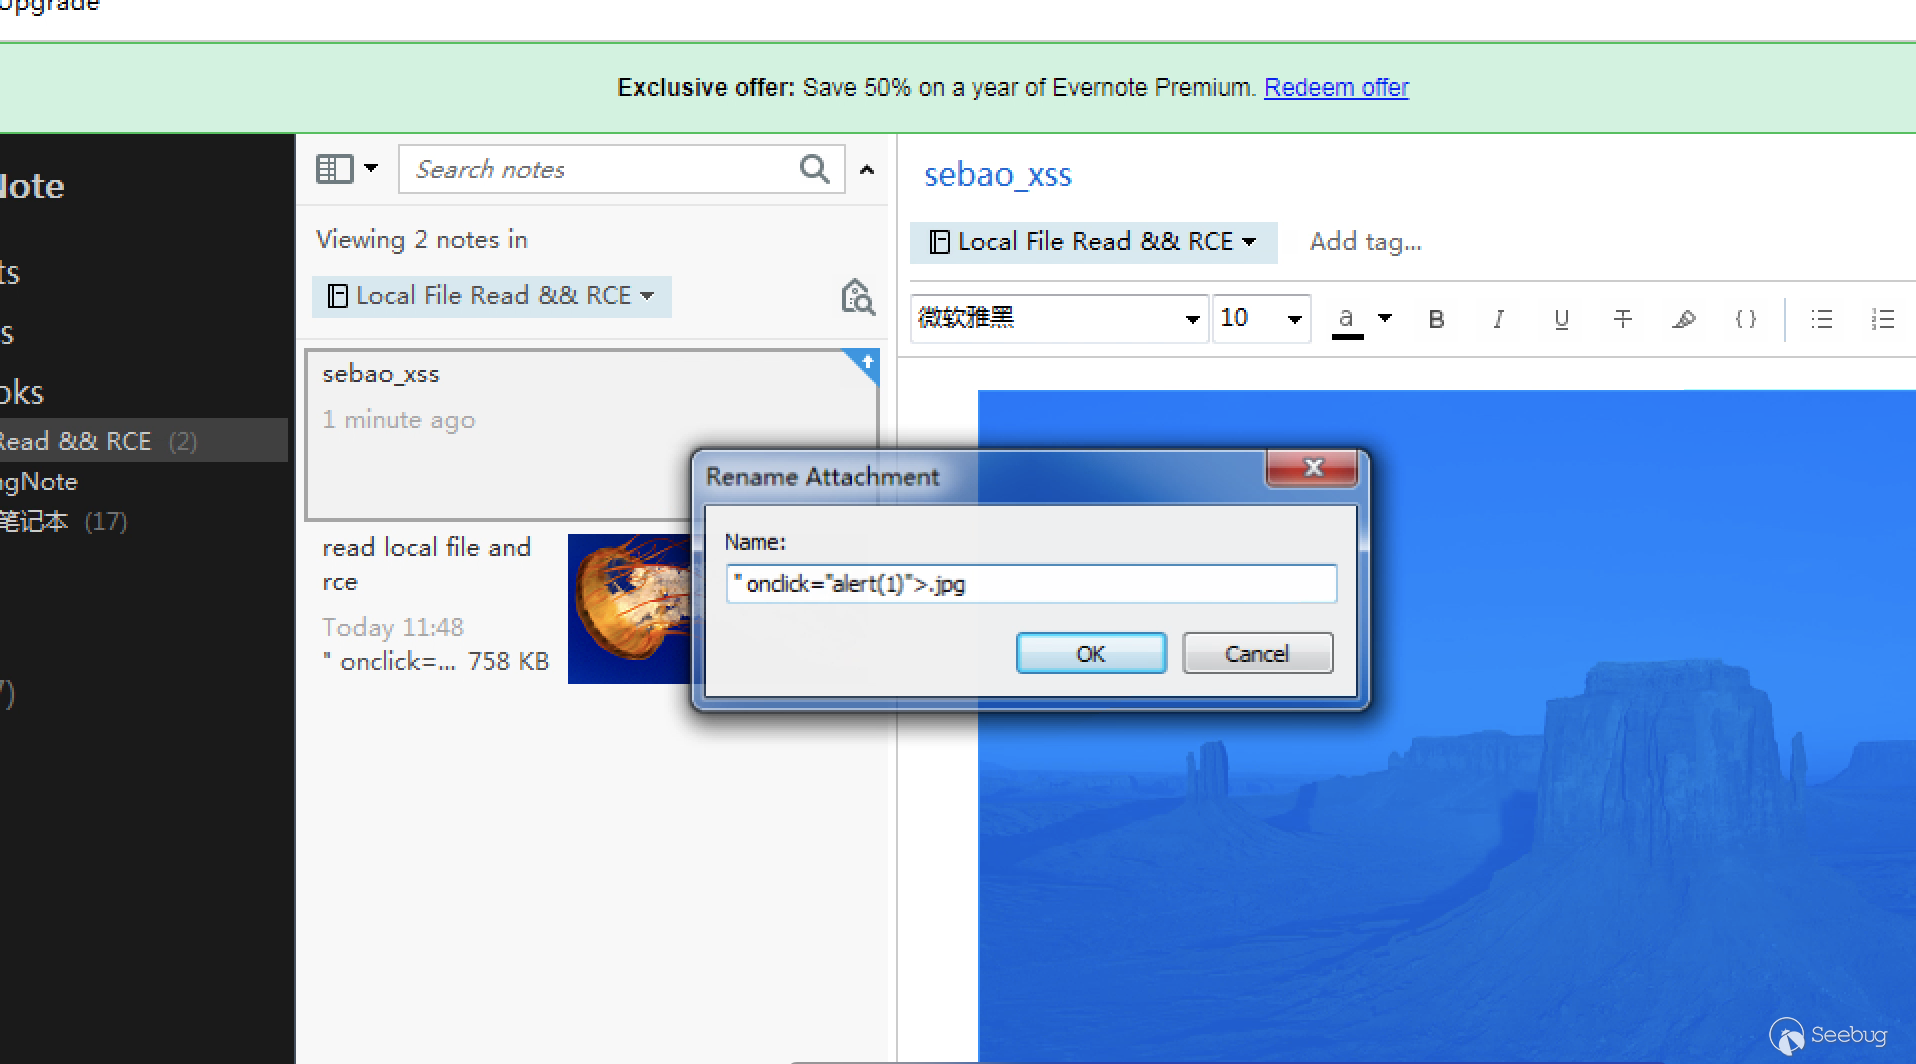 印象笔记 Windows 客户端 6.15 本地文件读取和远程命令执行漏洞(CVE-2018-18524)